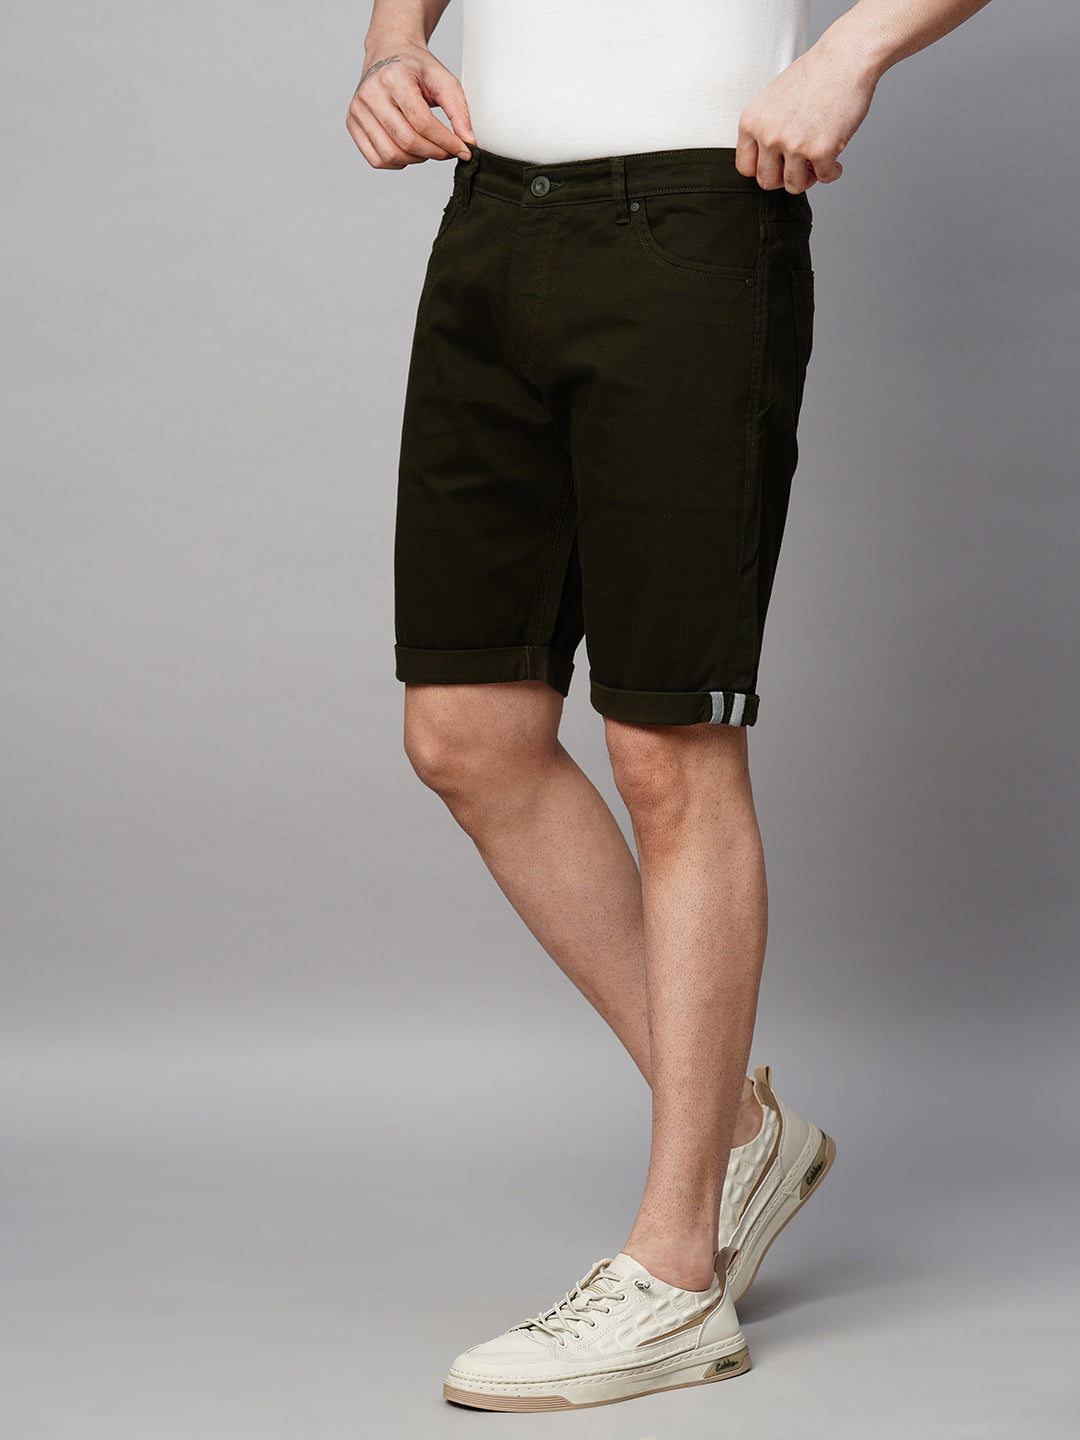 Genips Men's Bottle Green Cotton Lycra Slim Fit Shorts